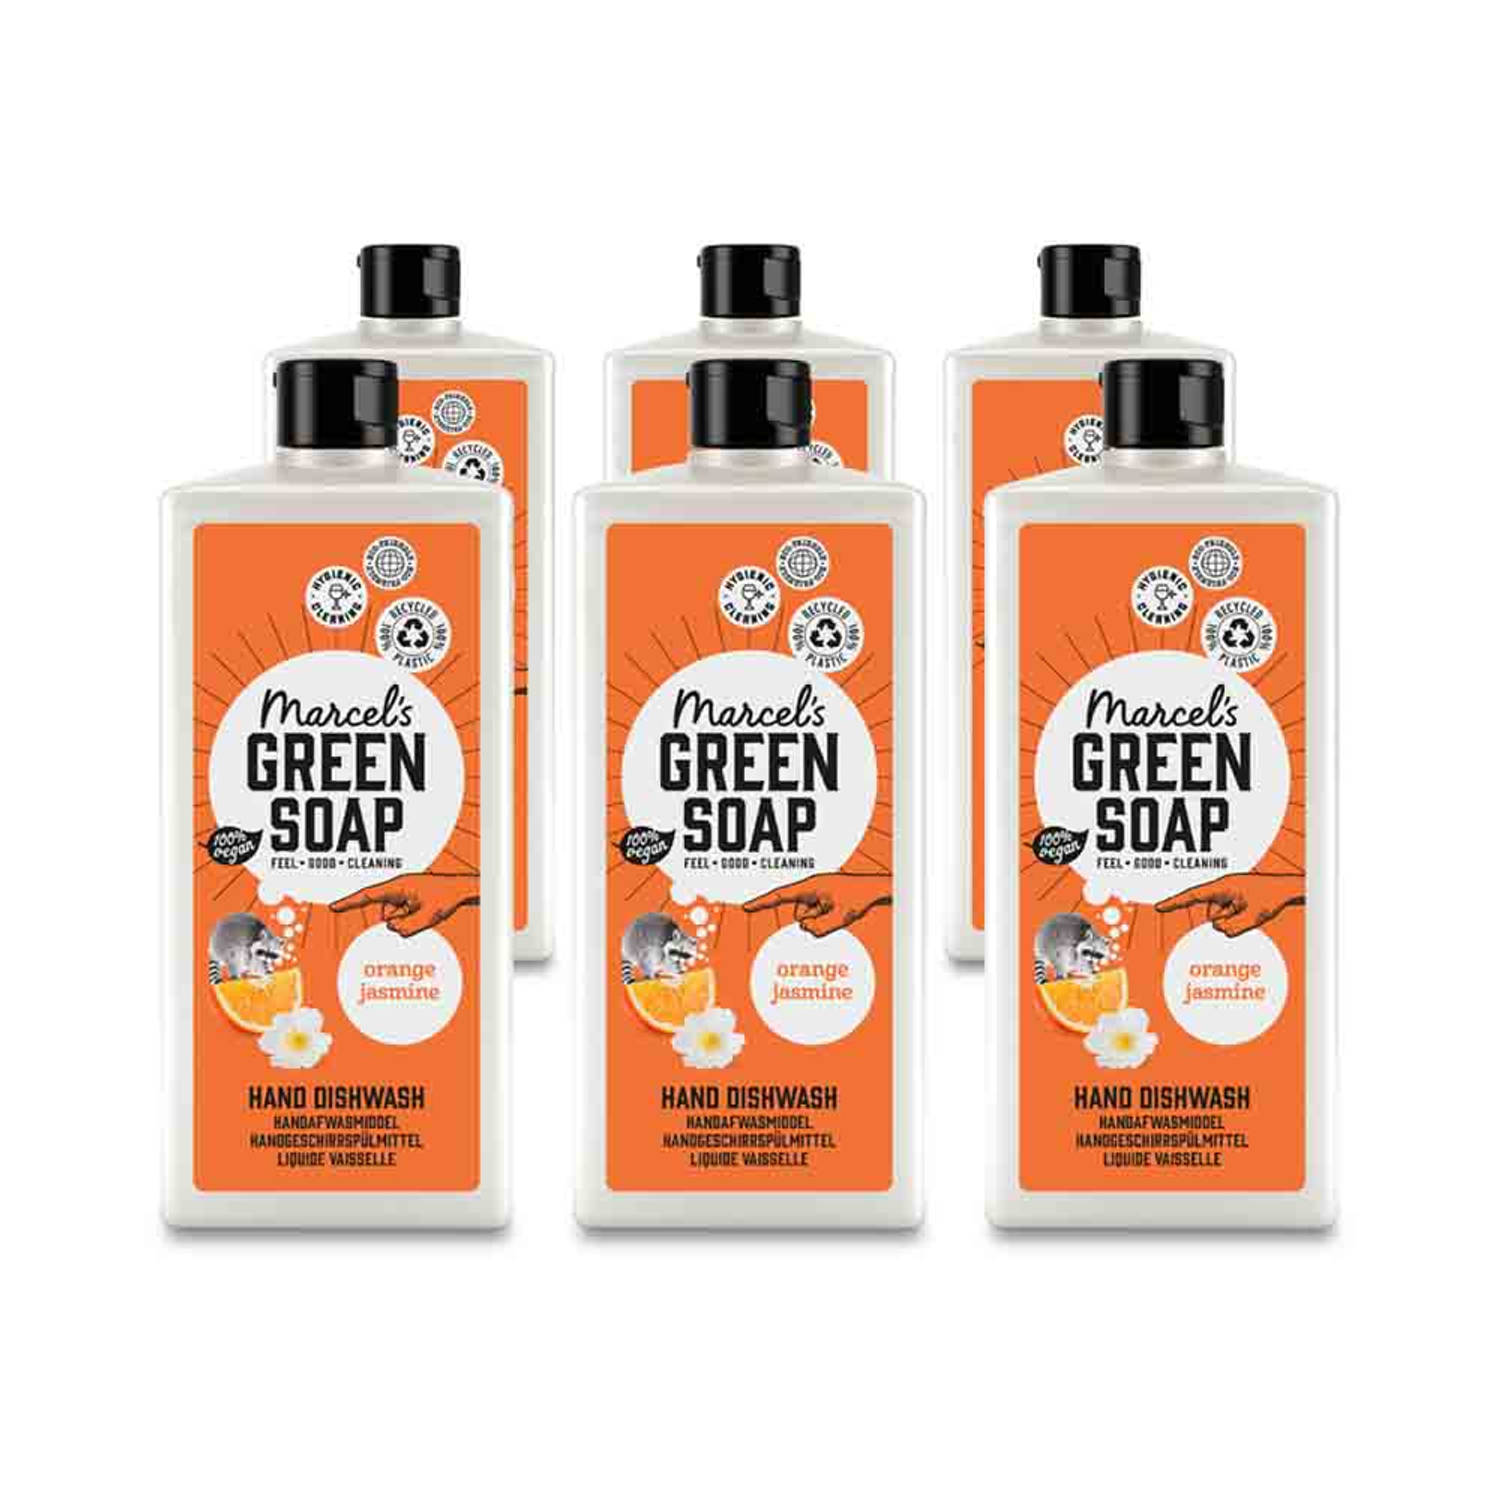 Marcel's Green Soap Afwasmiddel Sinaasappel & Jasmijn - 500ml - 6 stuks